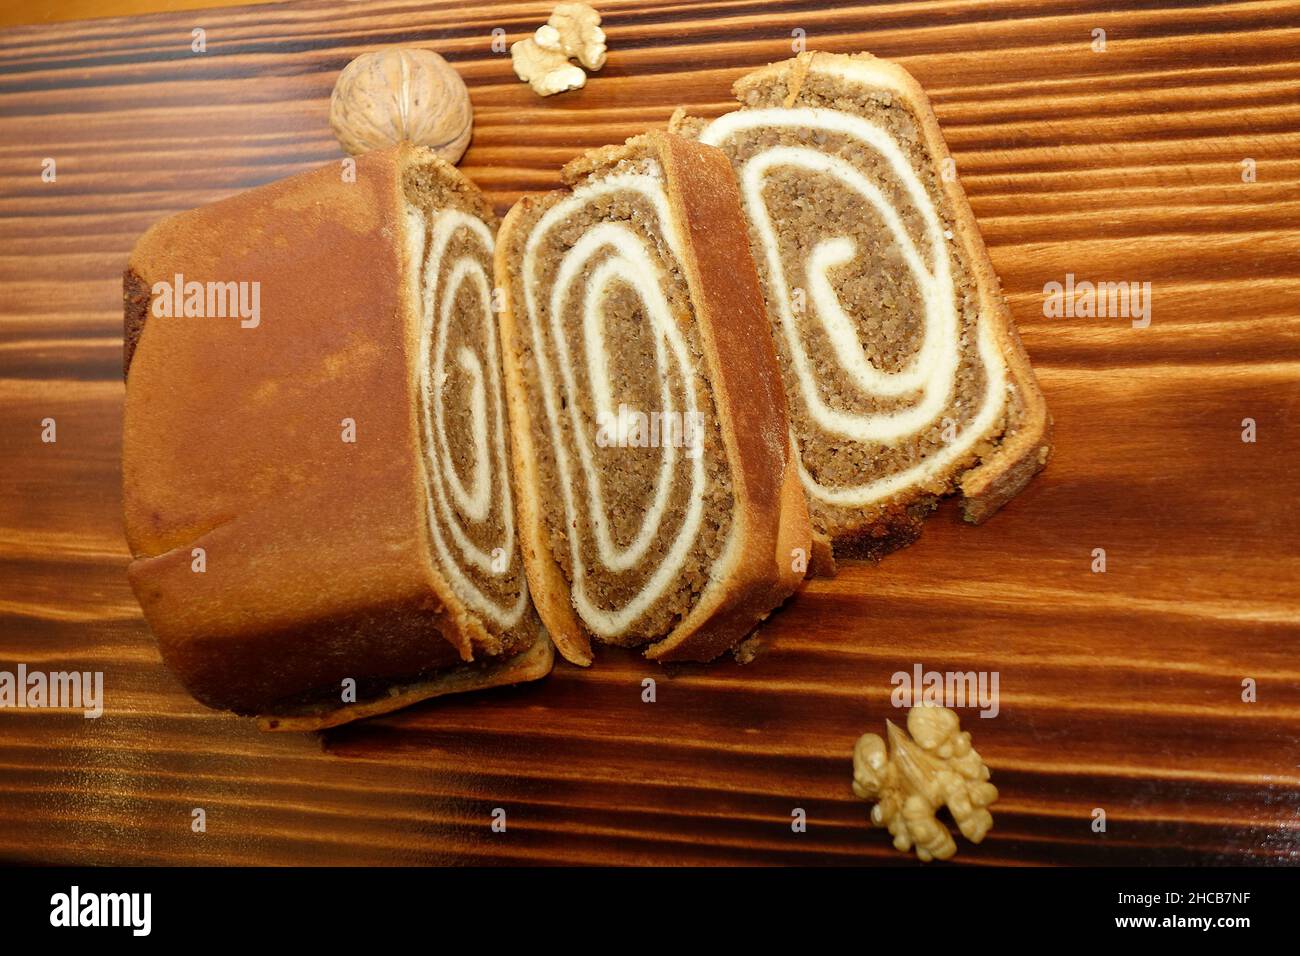 Nussbaum-Pastry 'Potica' auf verkohltem Holz Hintergrund. In Slowenien ist dieser Kuchen so traditionell, dass er Teil der nationalen Identität ist Stockfoto